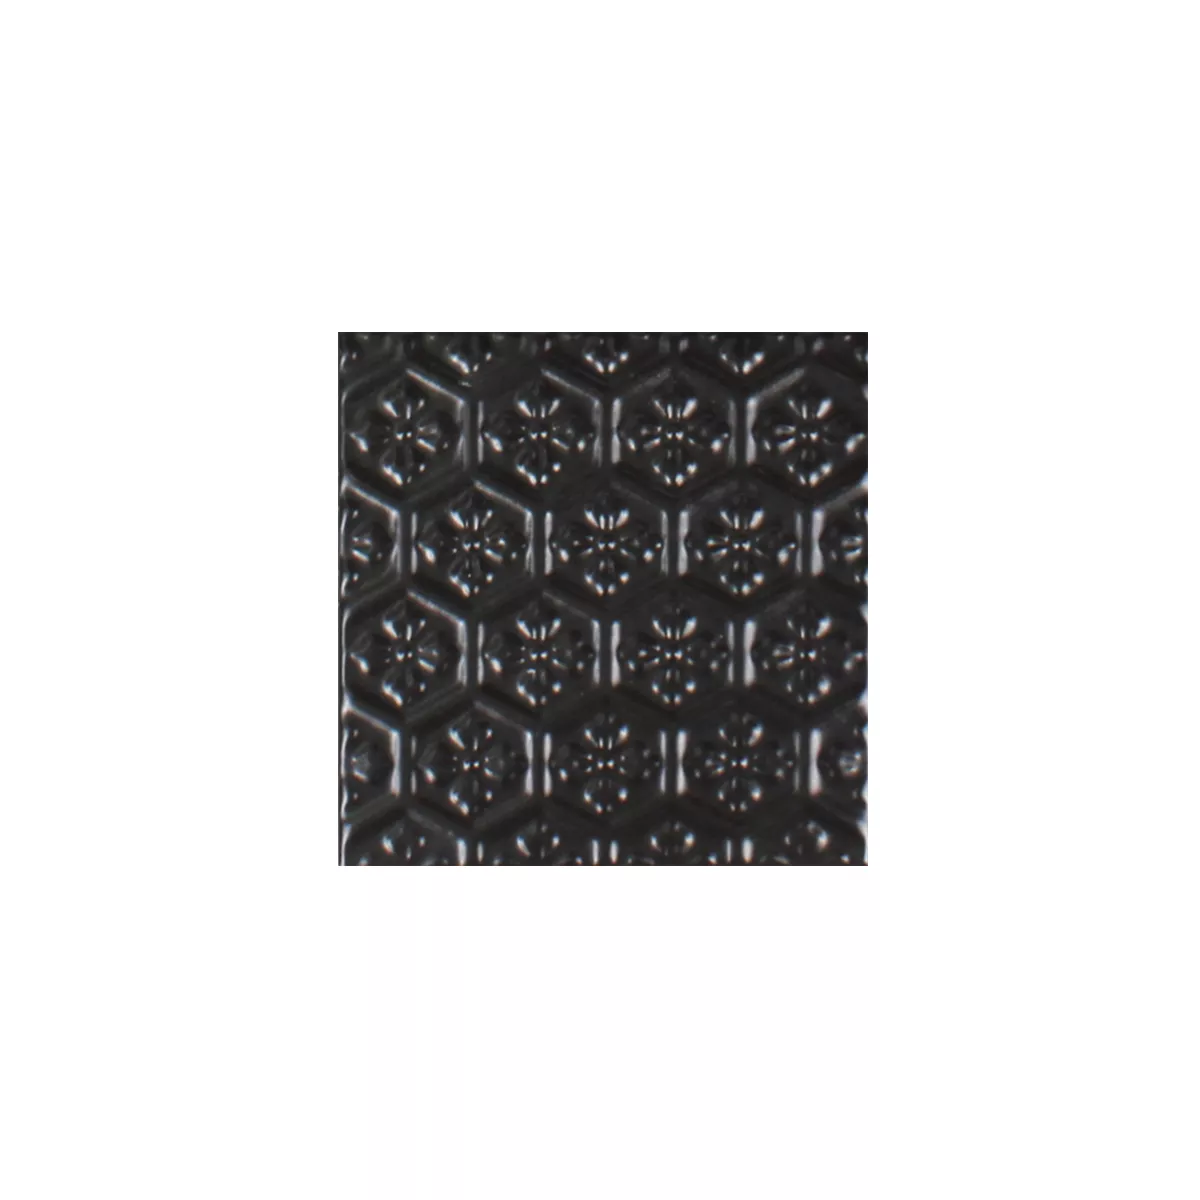 Sample Mosaic Tiles Ceramic Istria Black